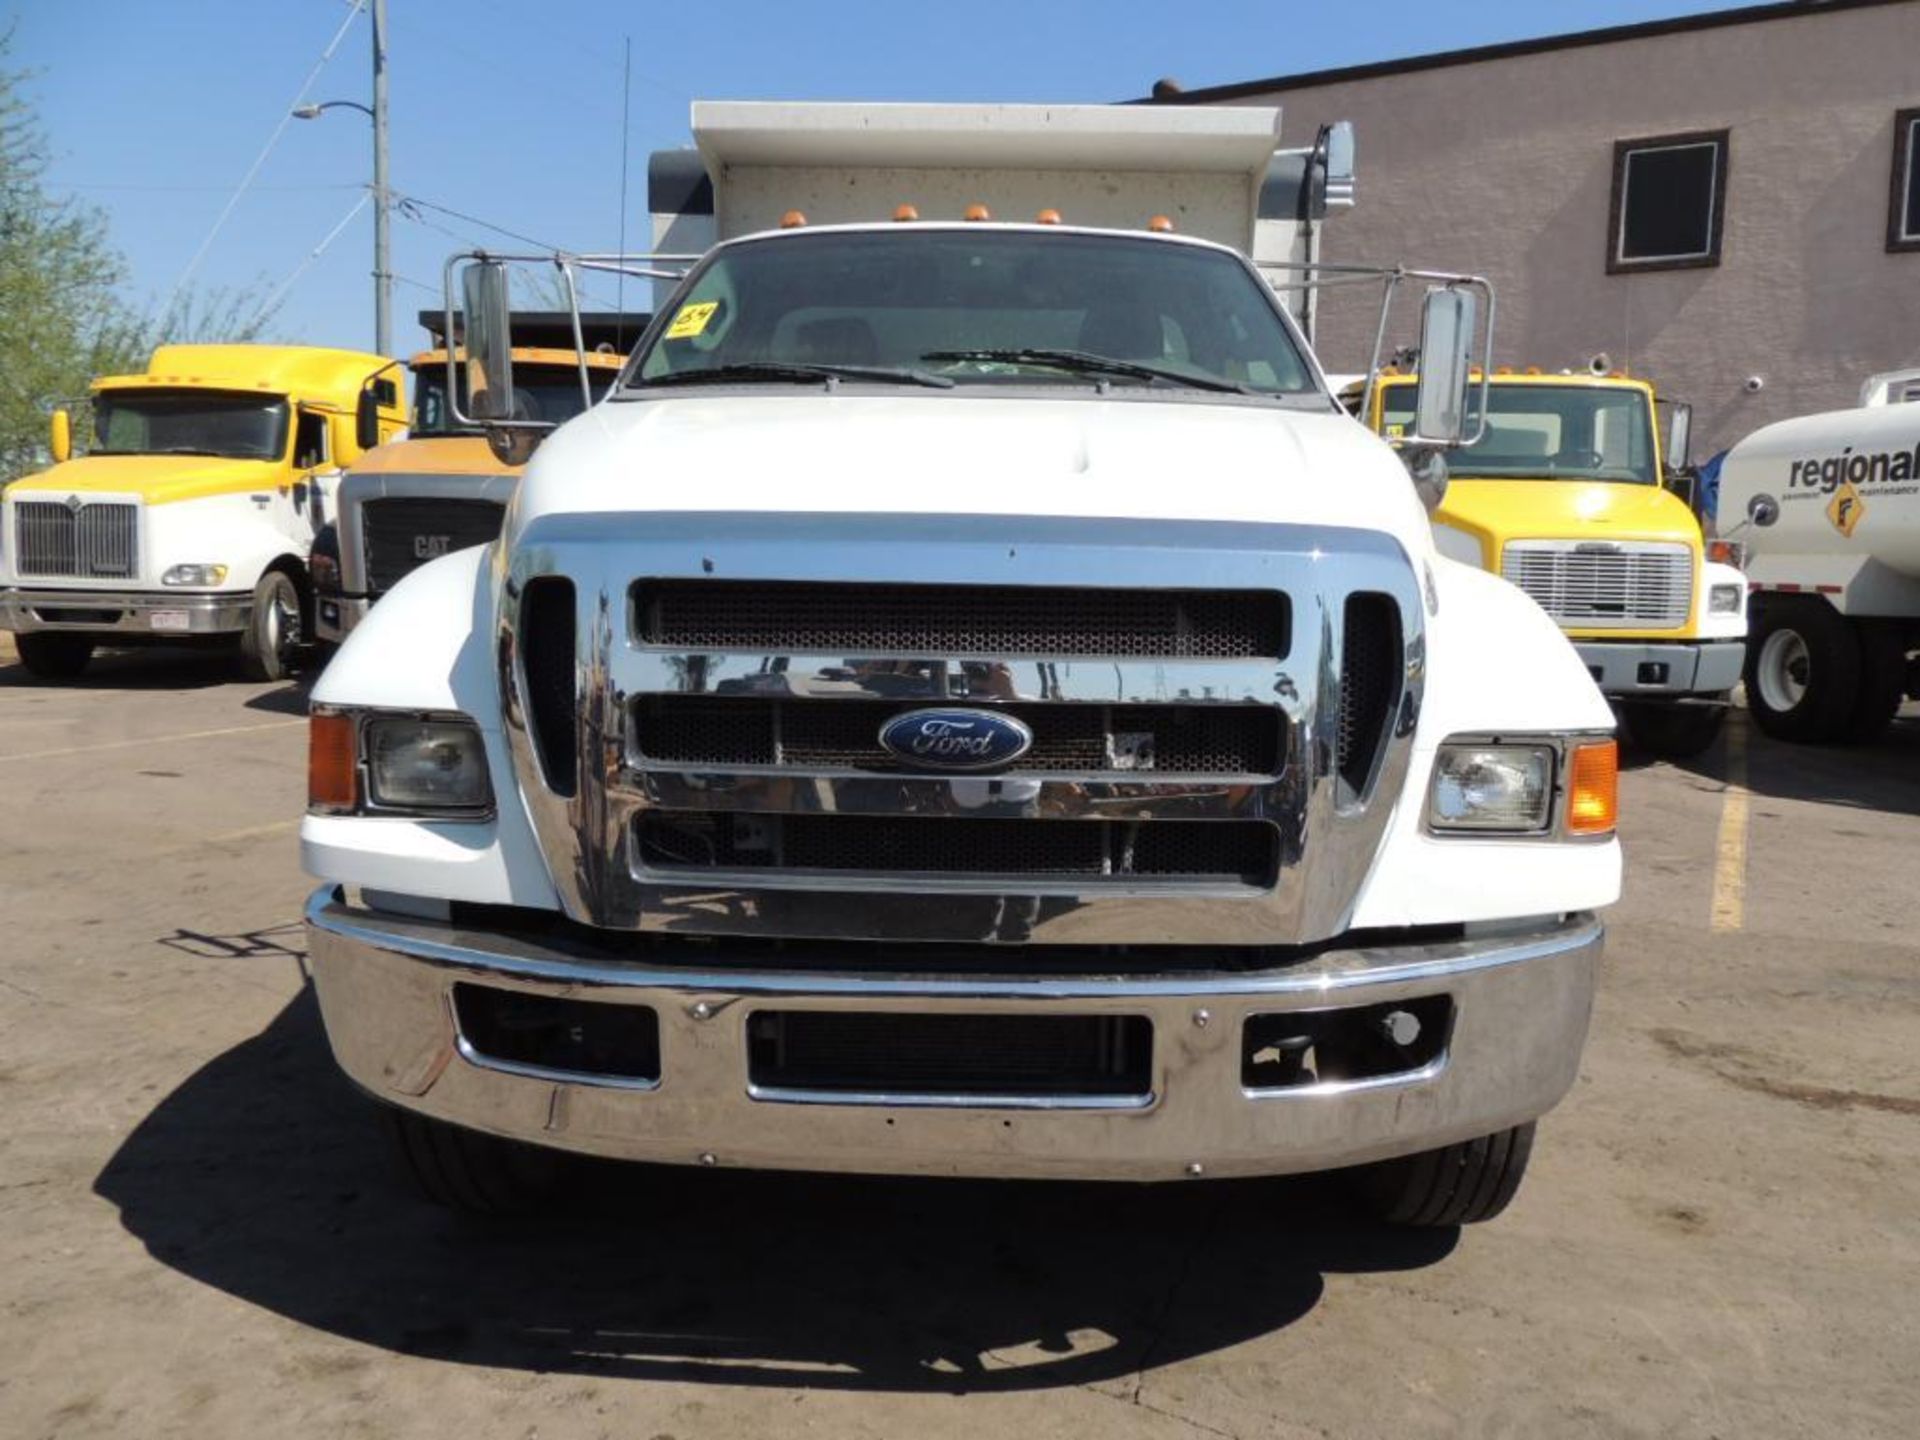 2015 Ford F750 XLT SD S/A 12-Yard Dump Truck 4x2, VIN # 3FRWF7FL2FV744995, Cummins ISB 6.7, Auto - Image 2 of 10